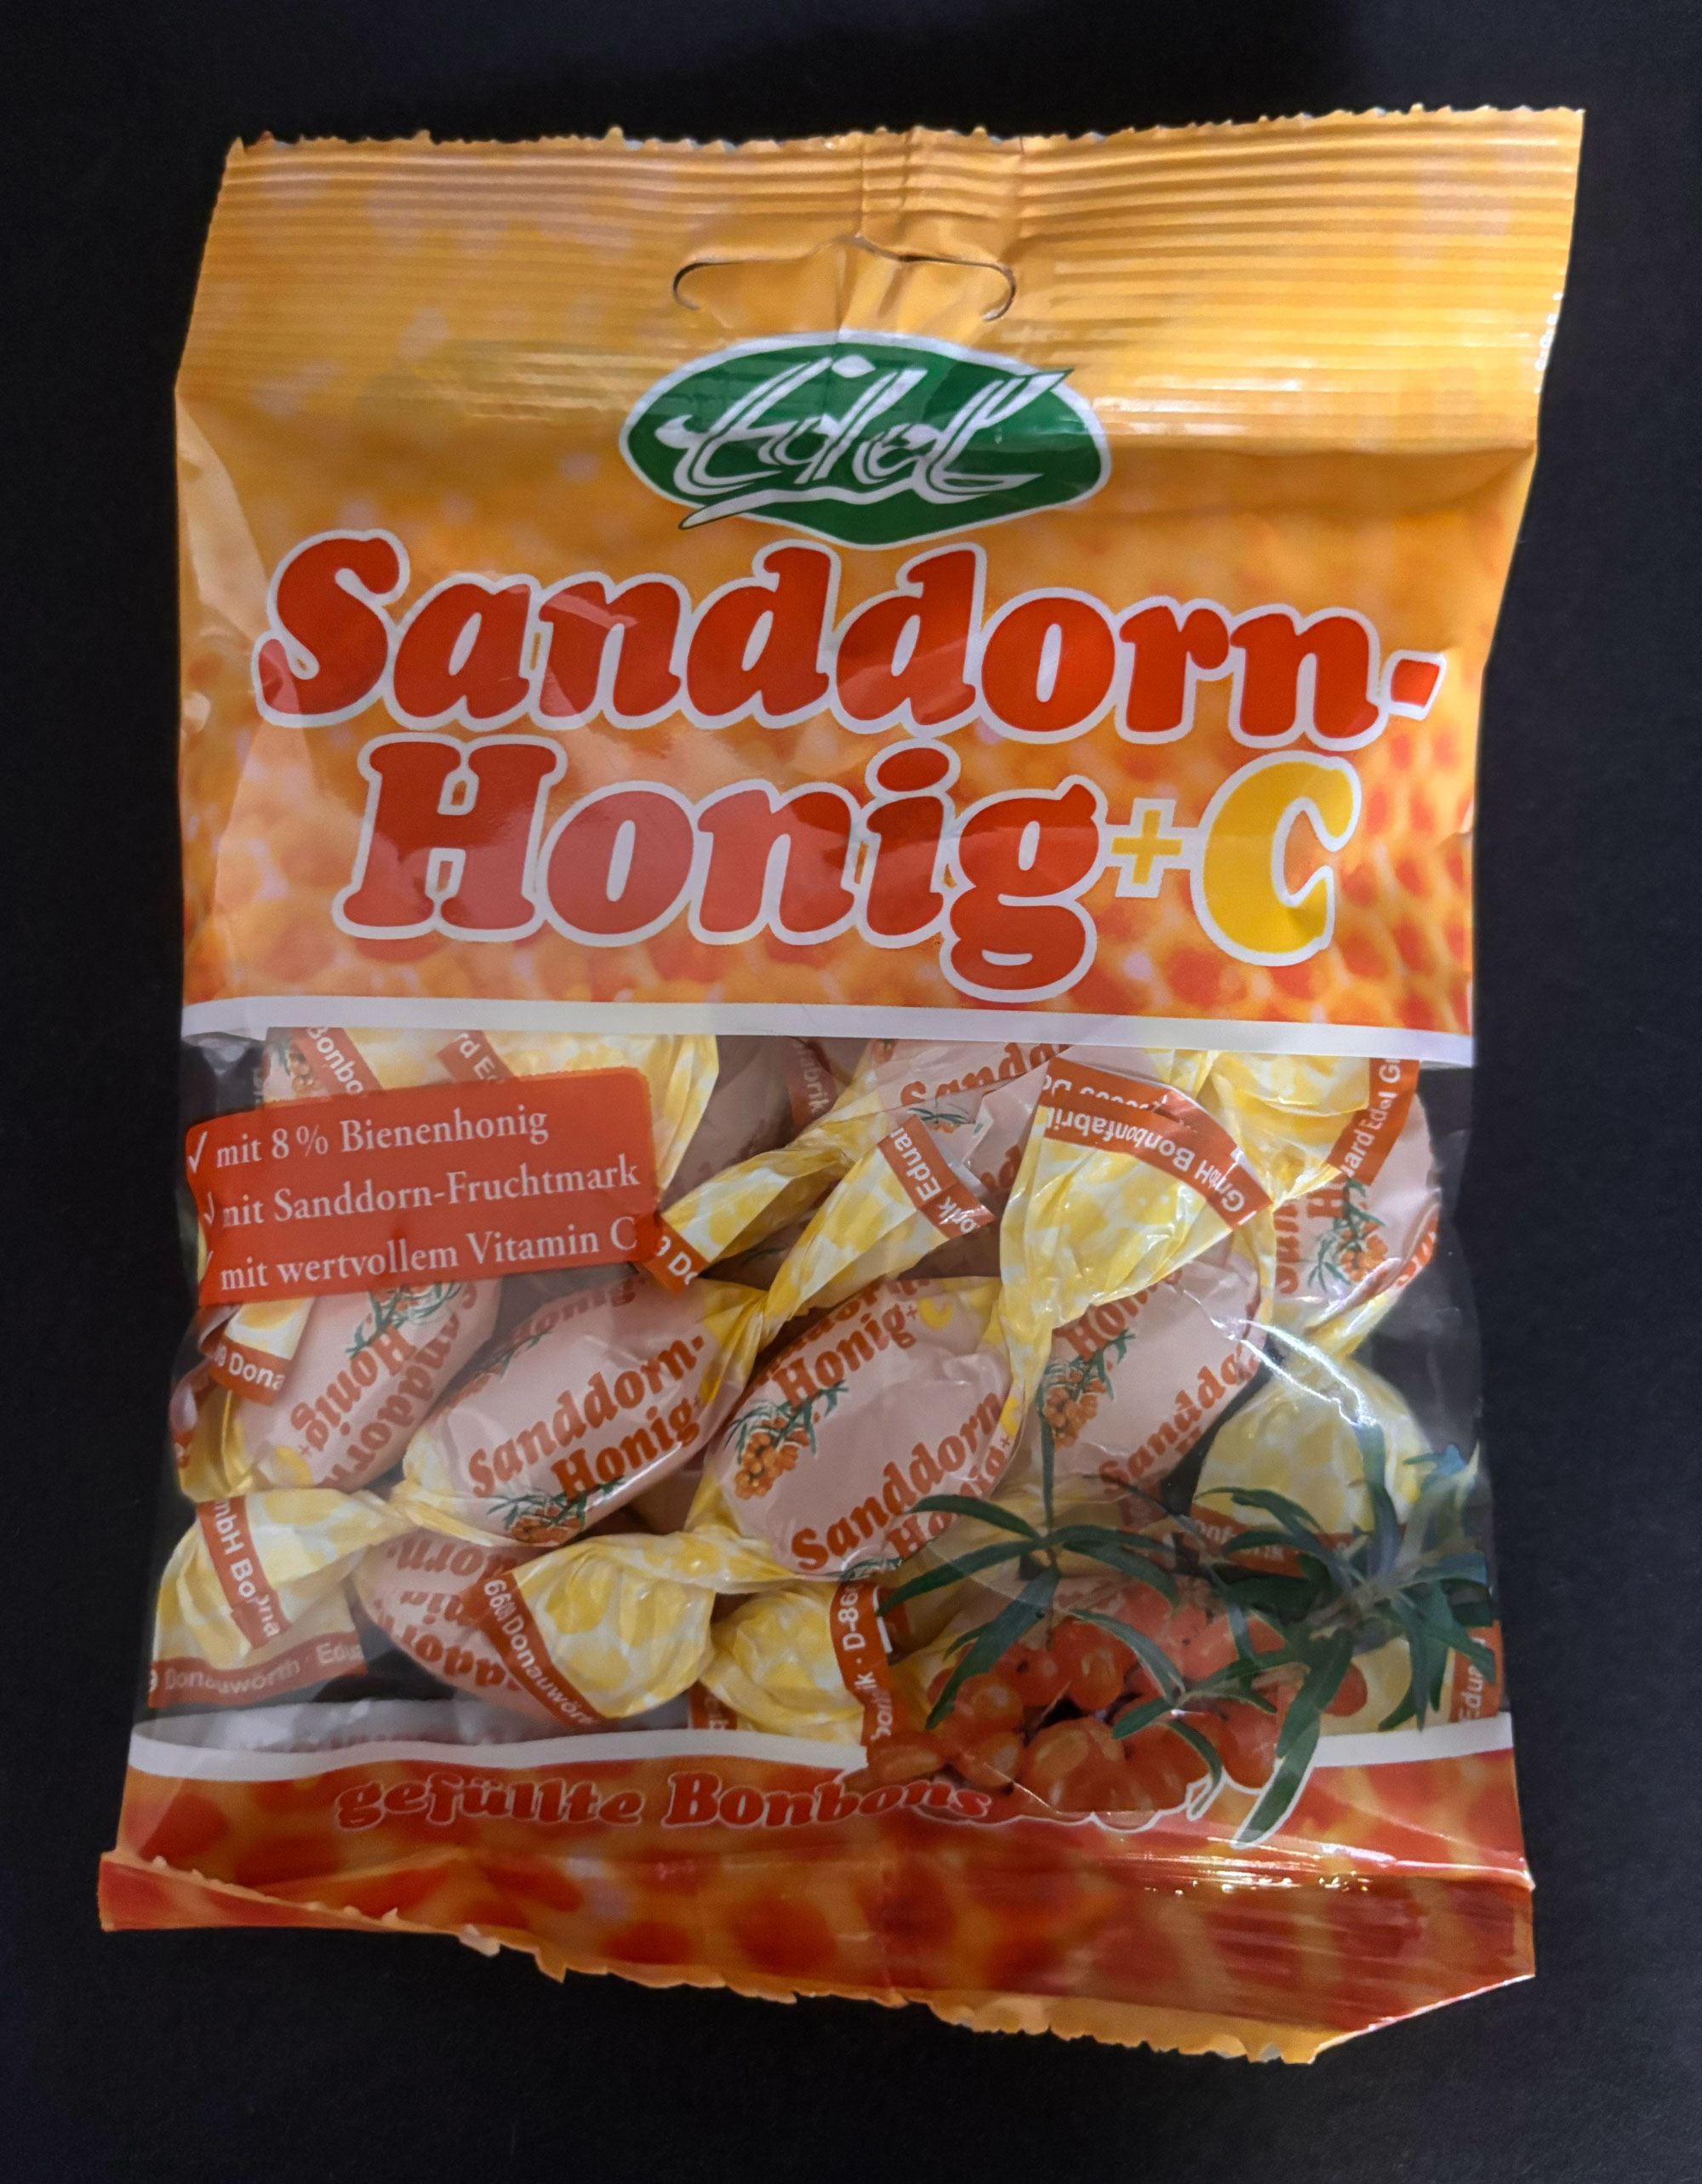 Sanddorn Honig+C gefüllte Bonbons 90g